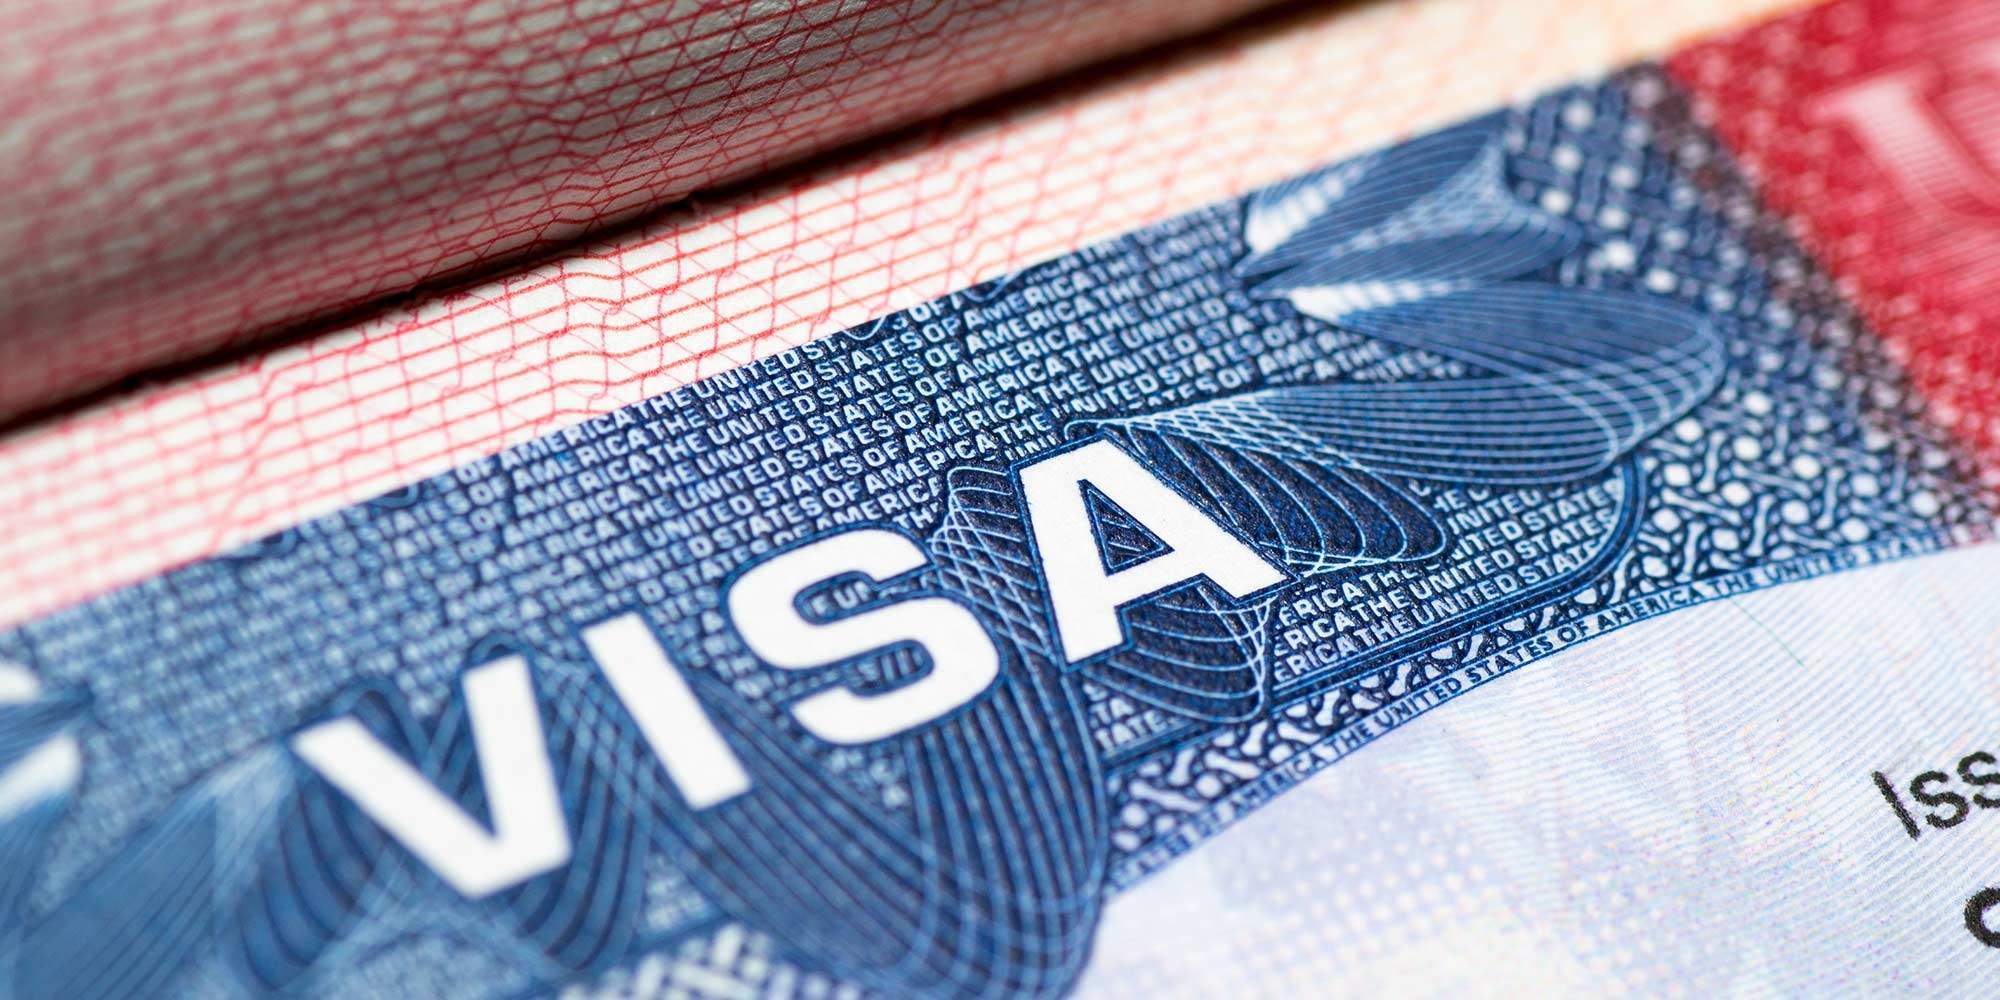 Non-Immigrant-Visa